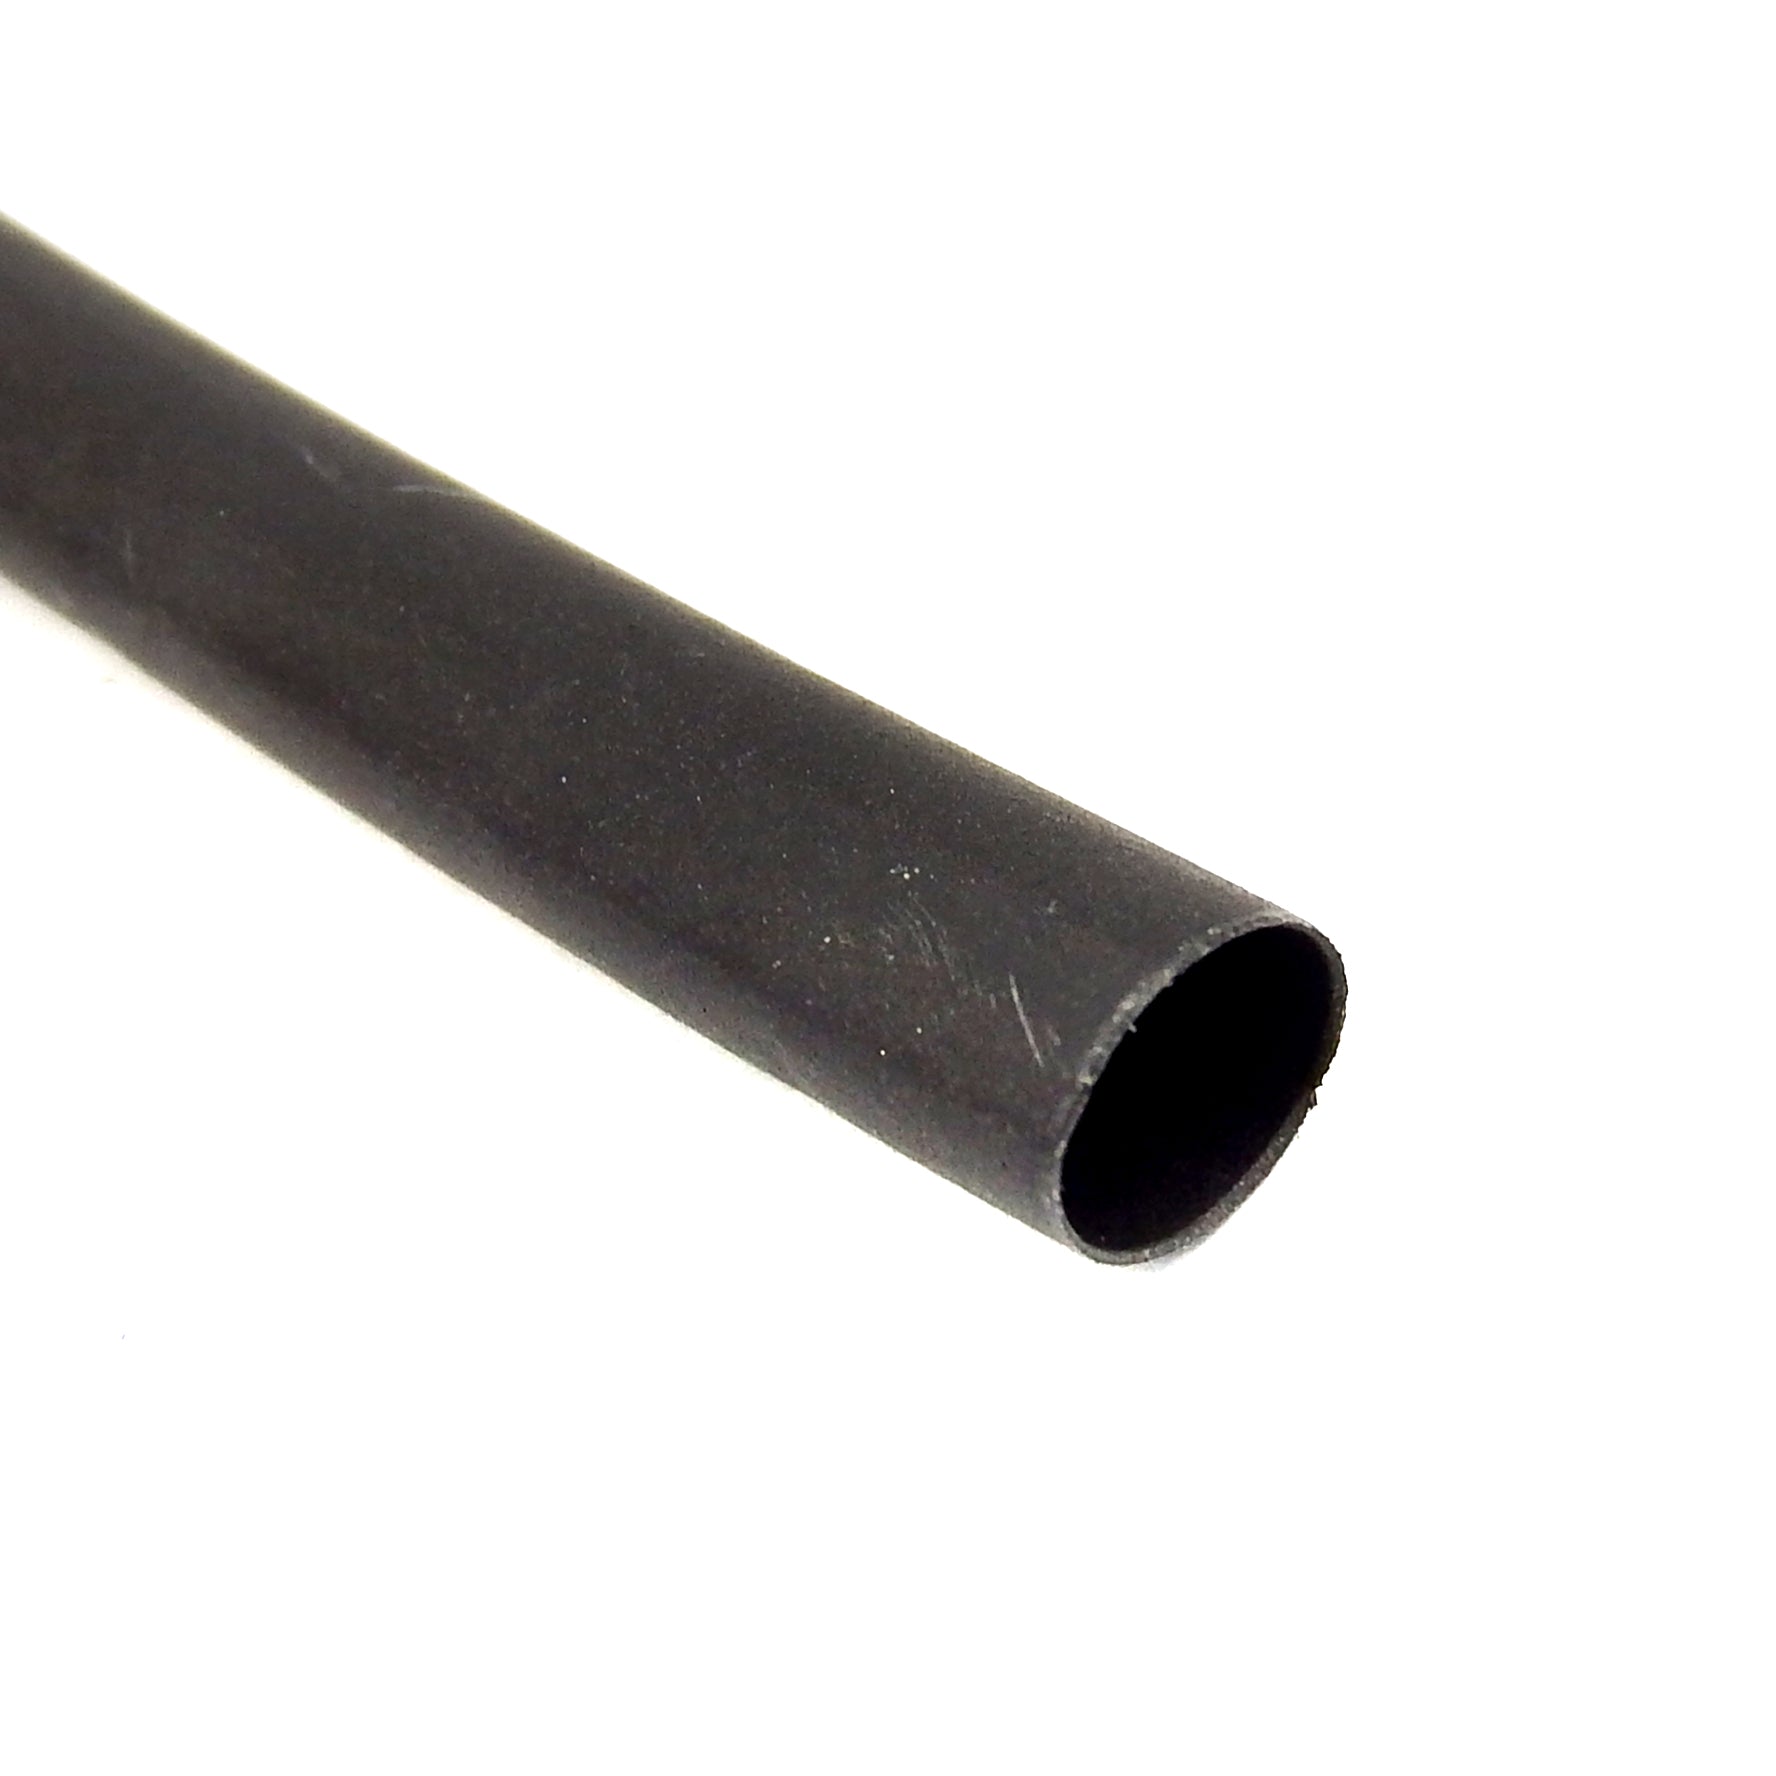 Heatshrink Electrical Sleeving 6.4mm Black Per M